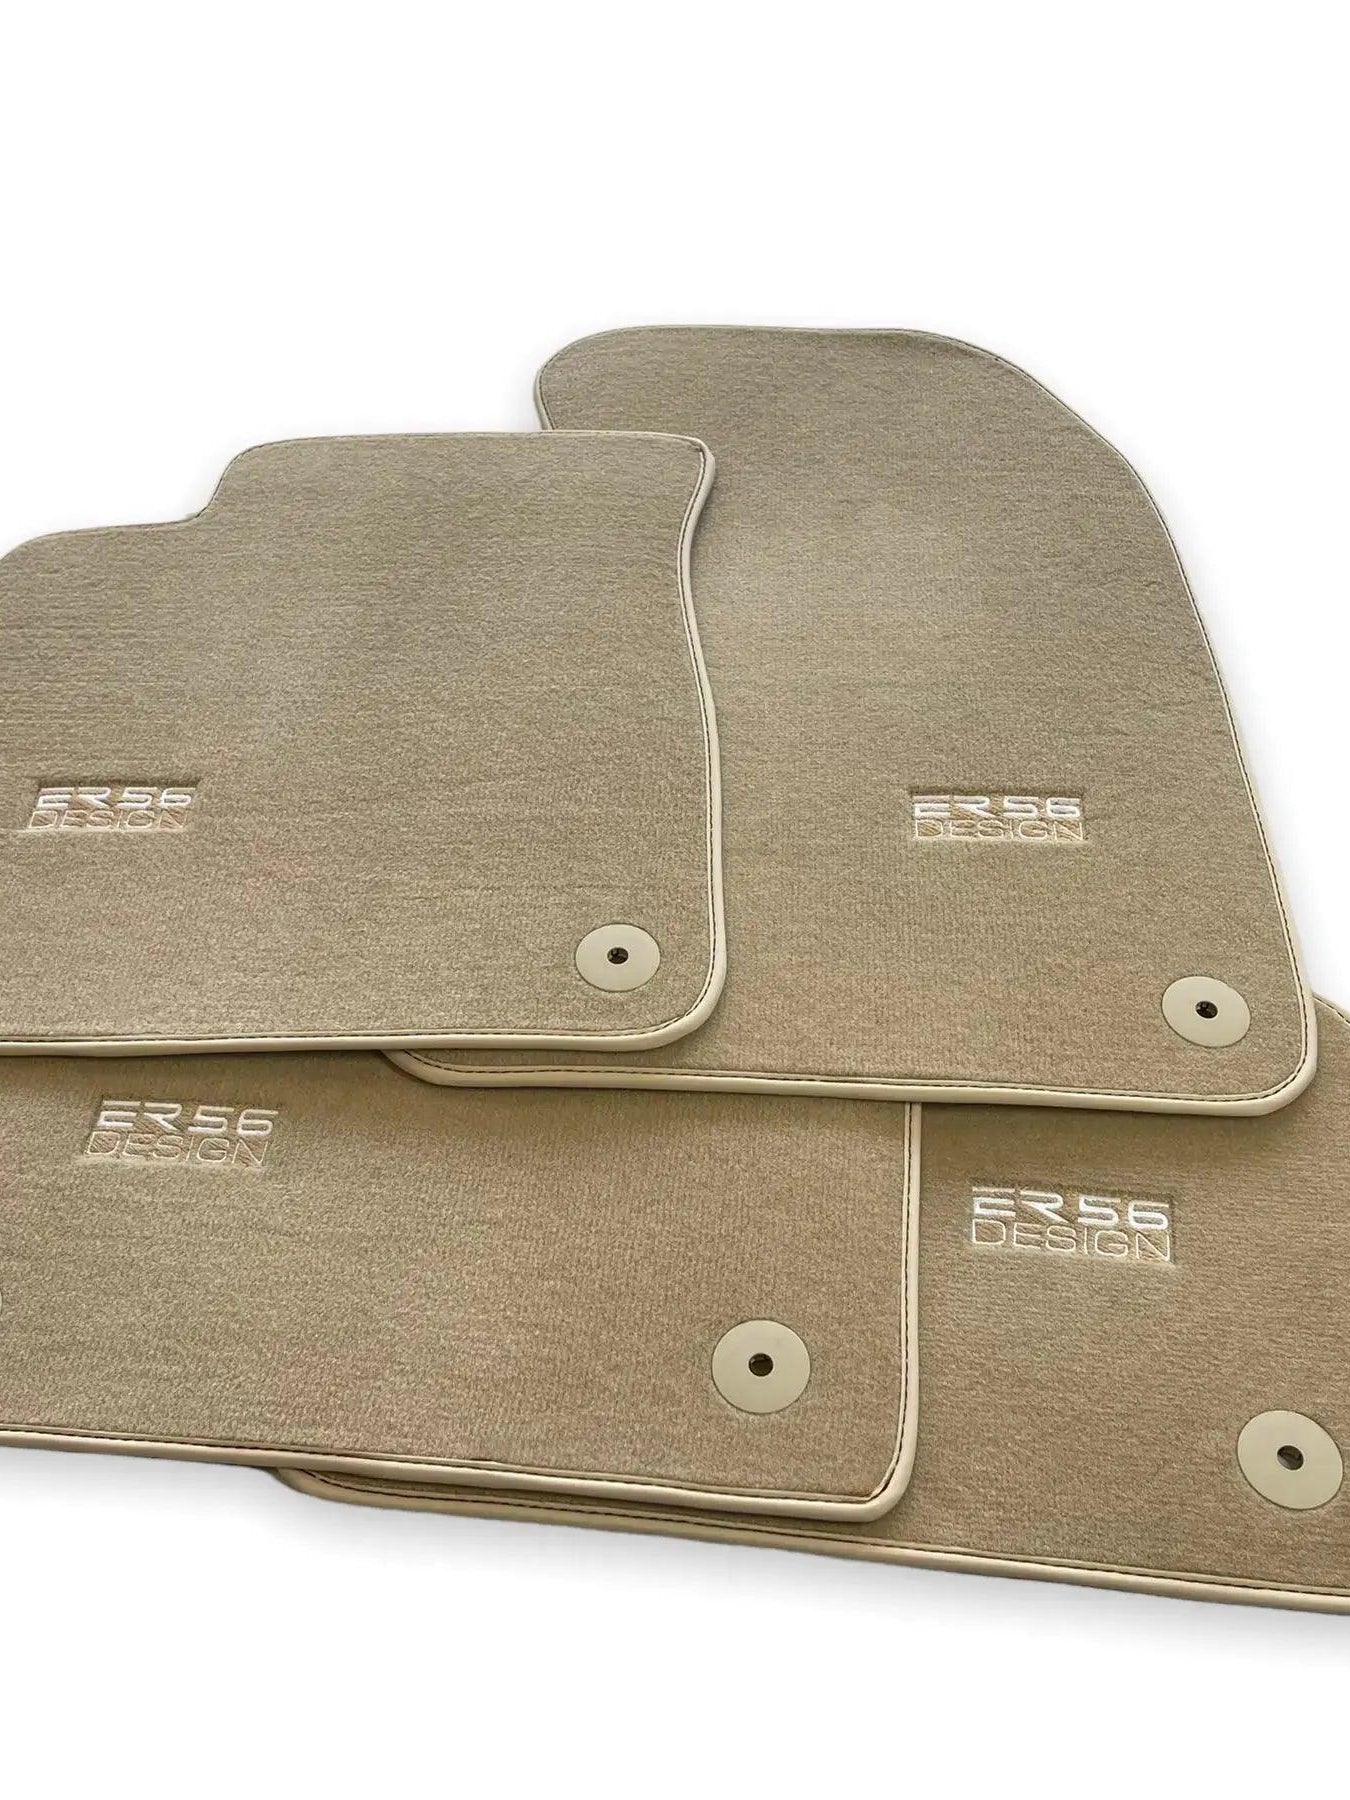 Beige Floor Mats for Audi Q3 8U (2011-2018) | ER56 Design - AutoWin